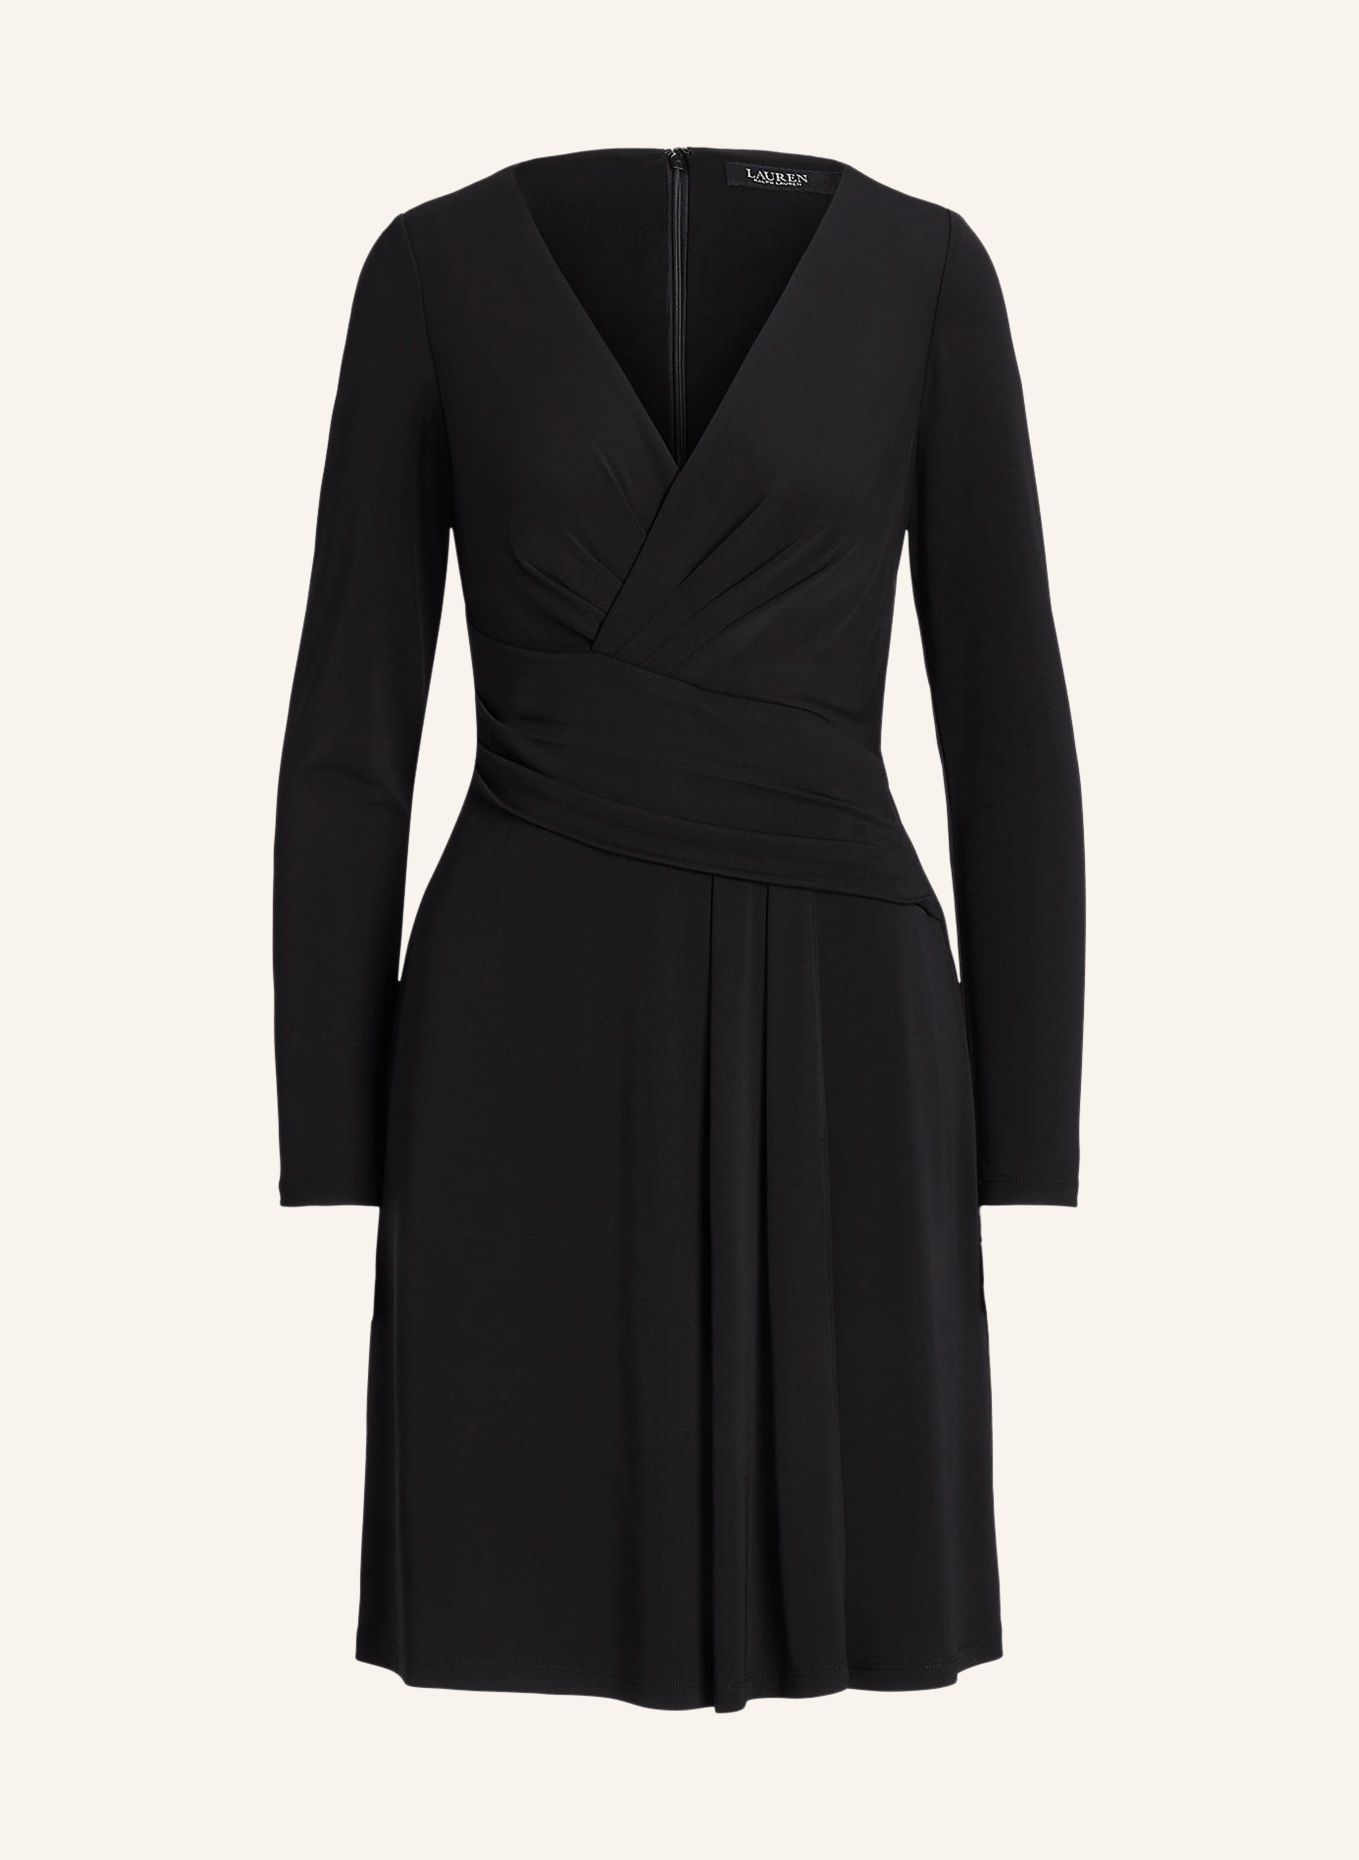 LAUREN RALPH LAUREN Jersey dress, Color: BLACK (Image 1)